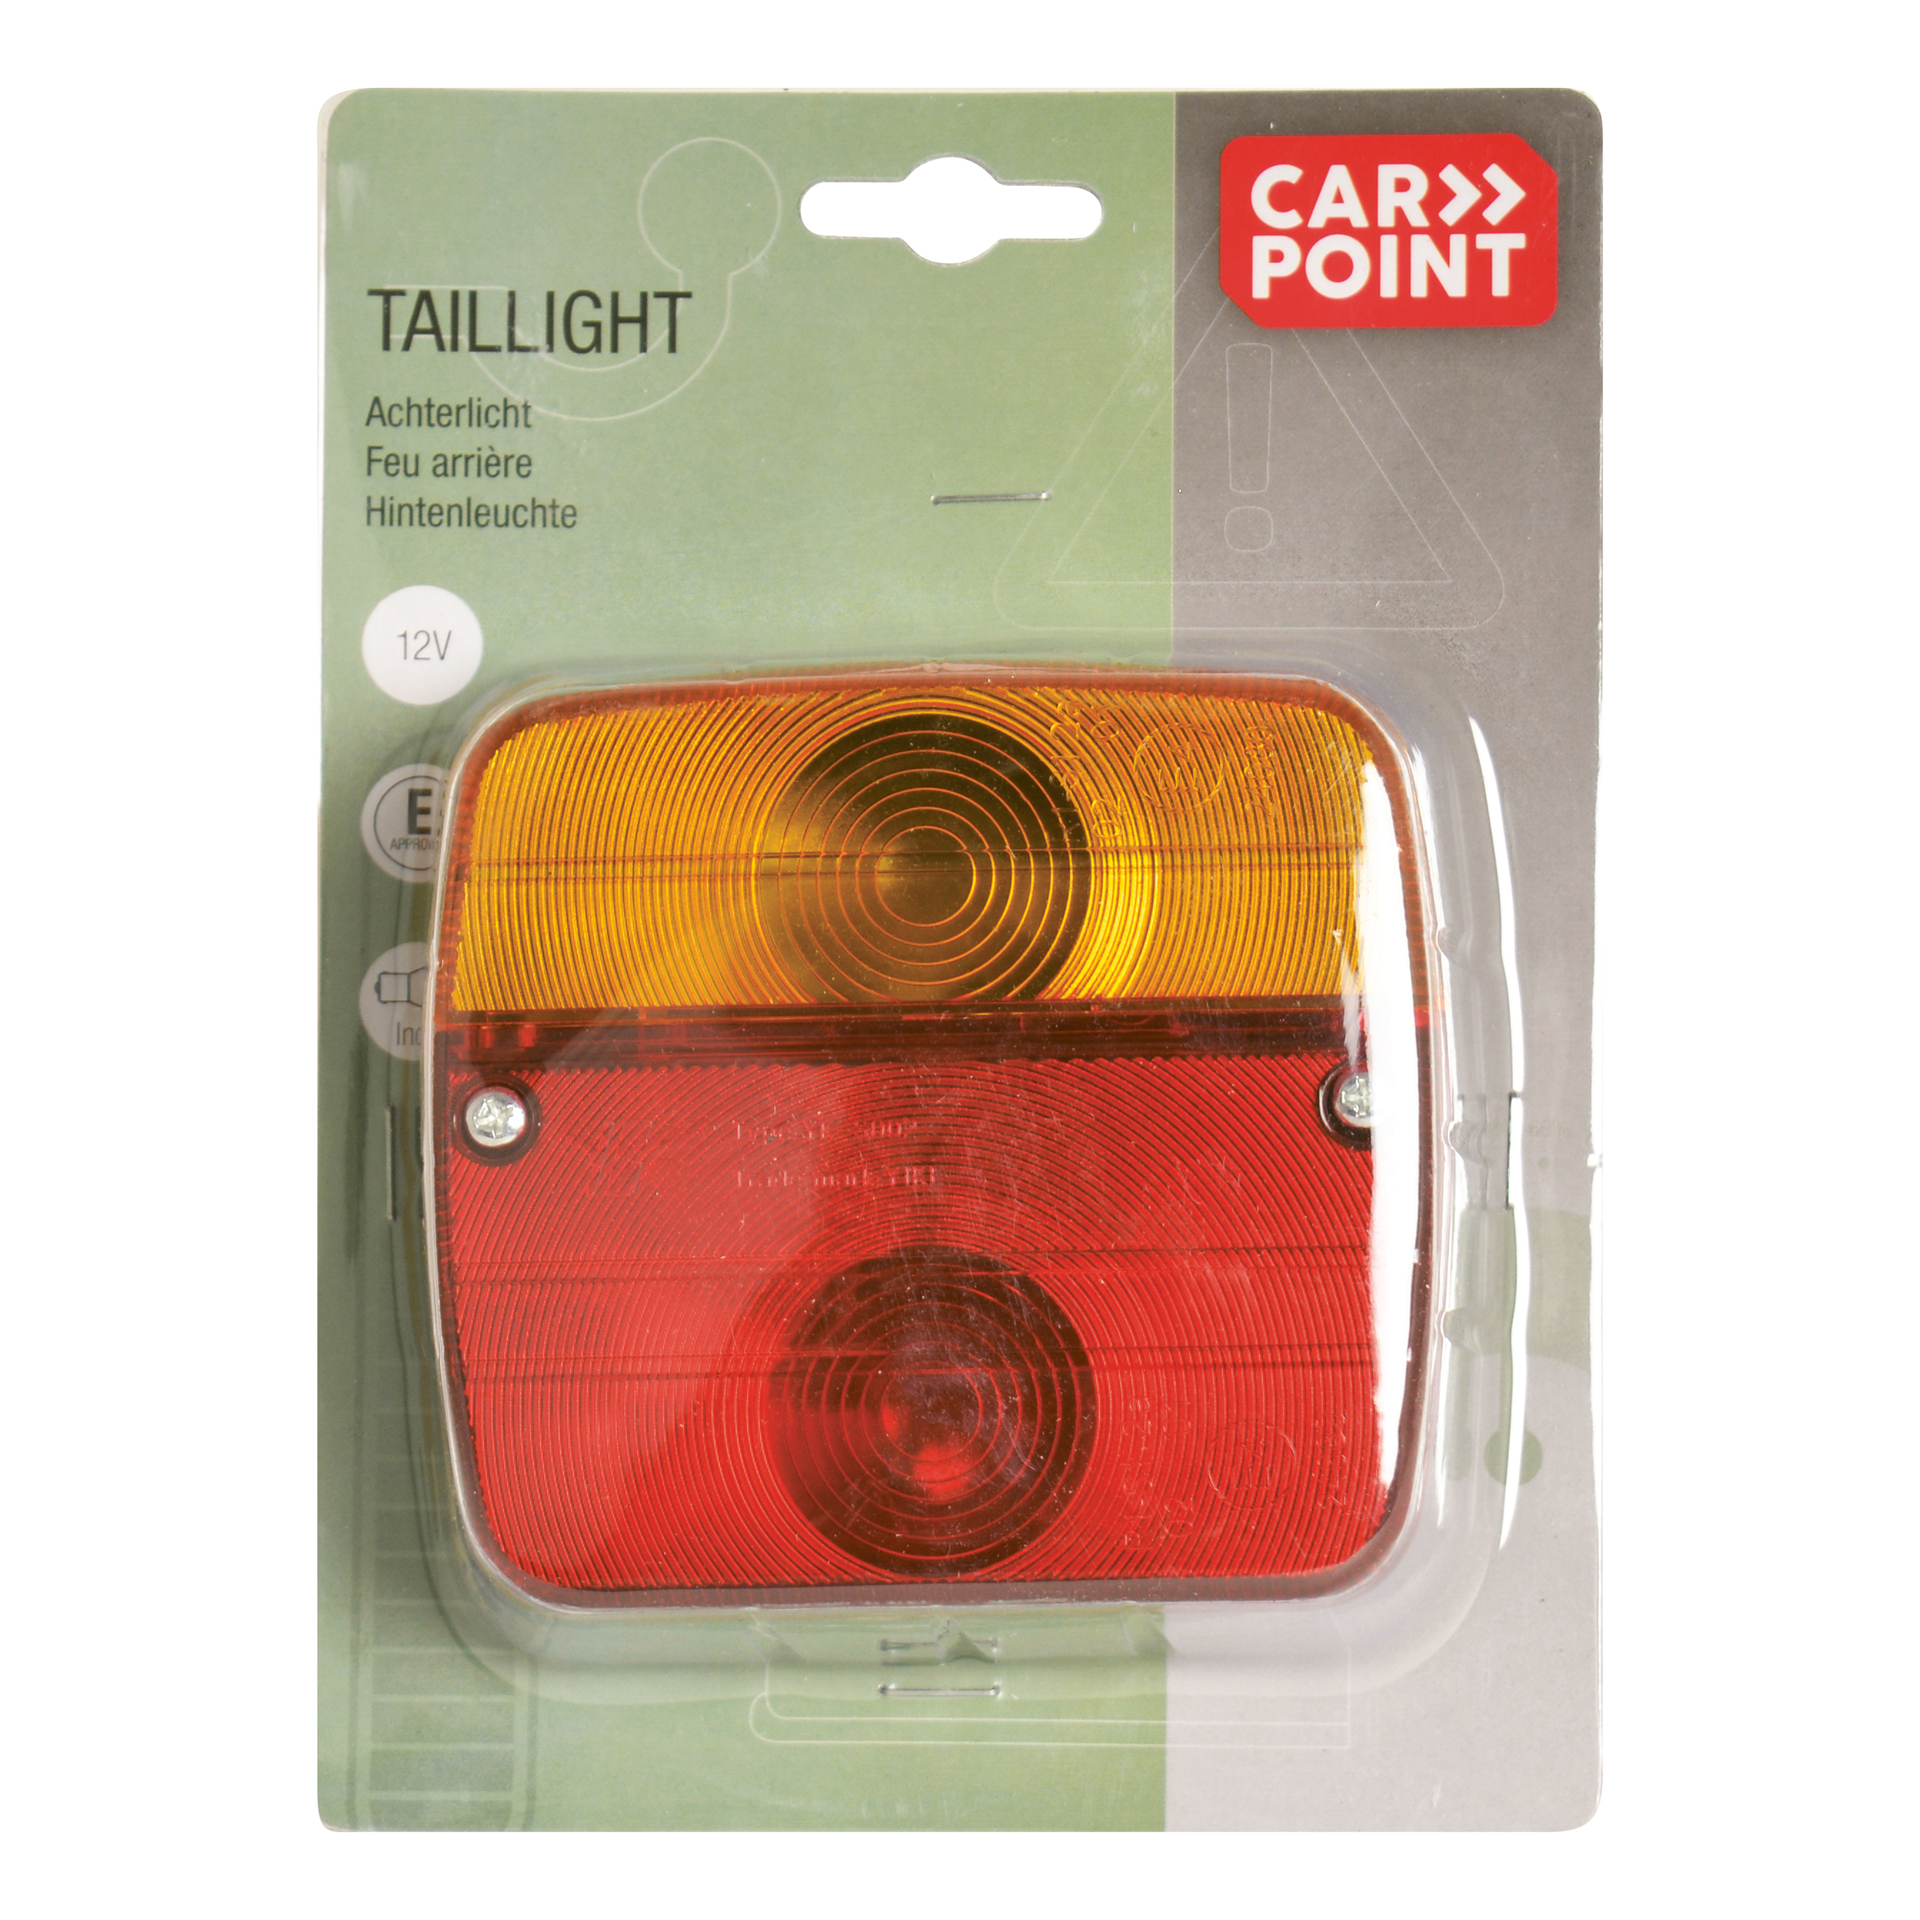 Carpoint Carpoint 12V Achterlicht 3 Functies + Lampen 0402421